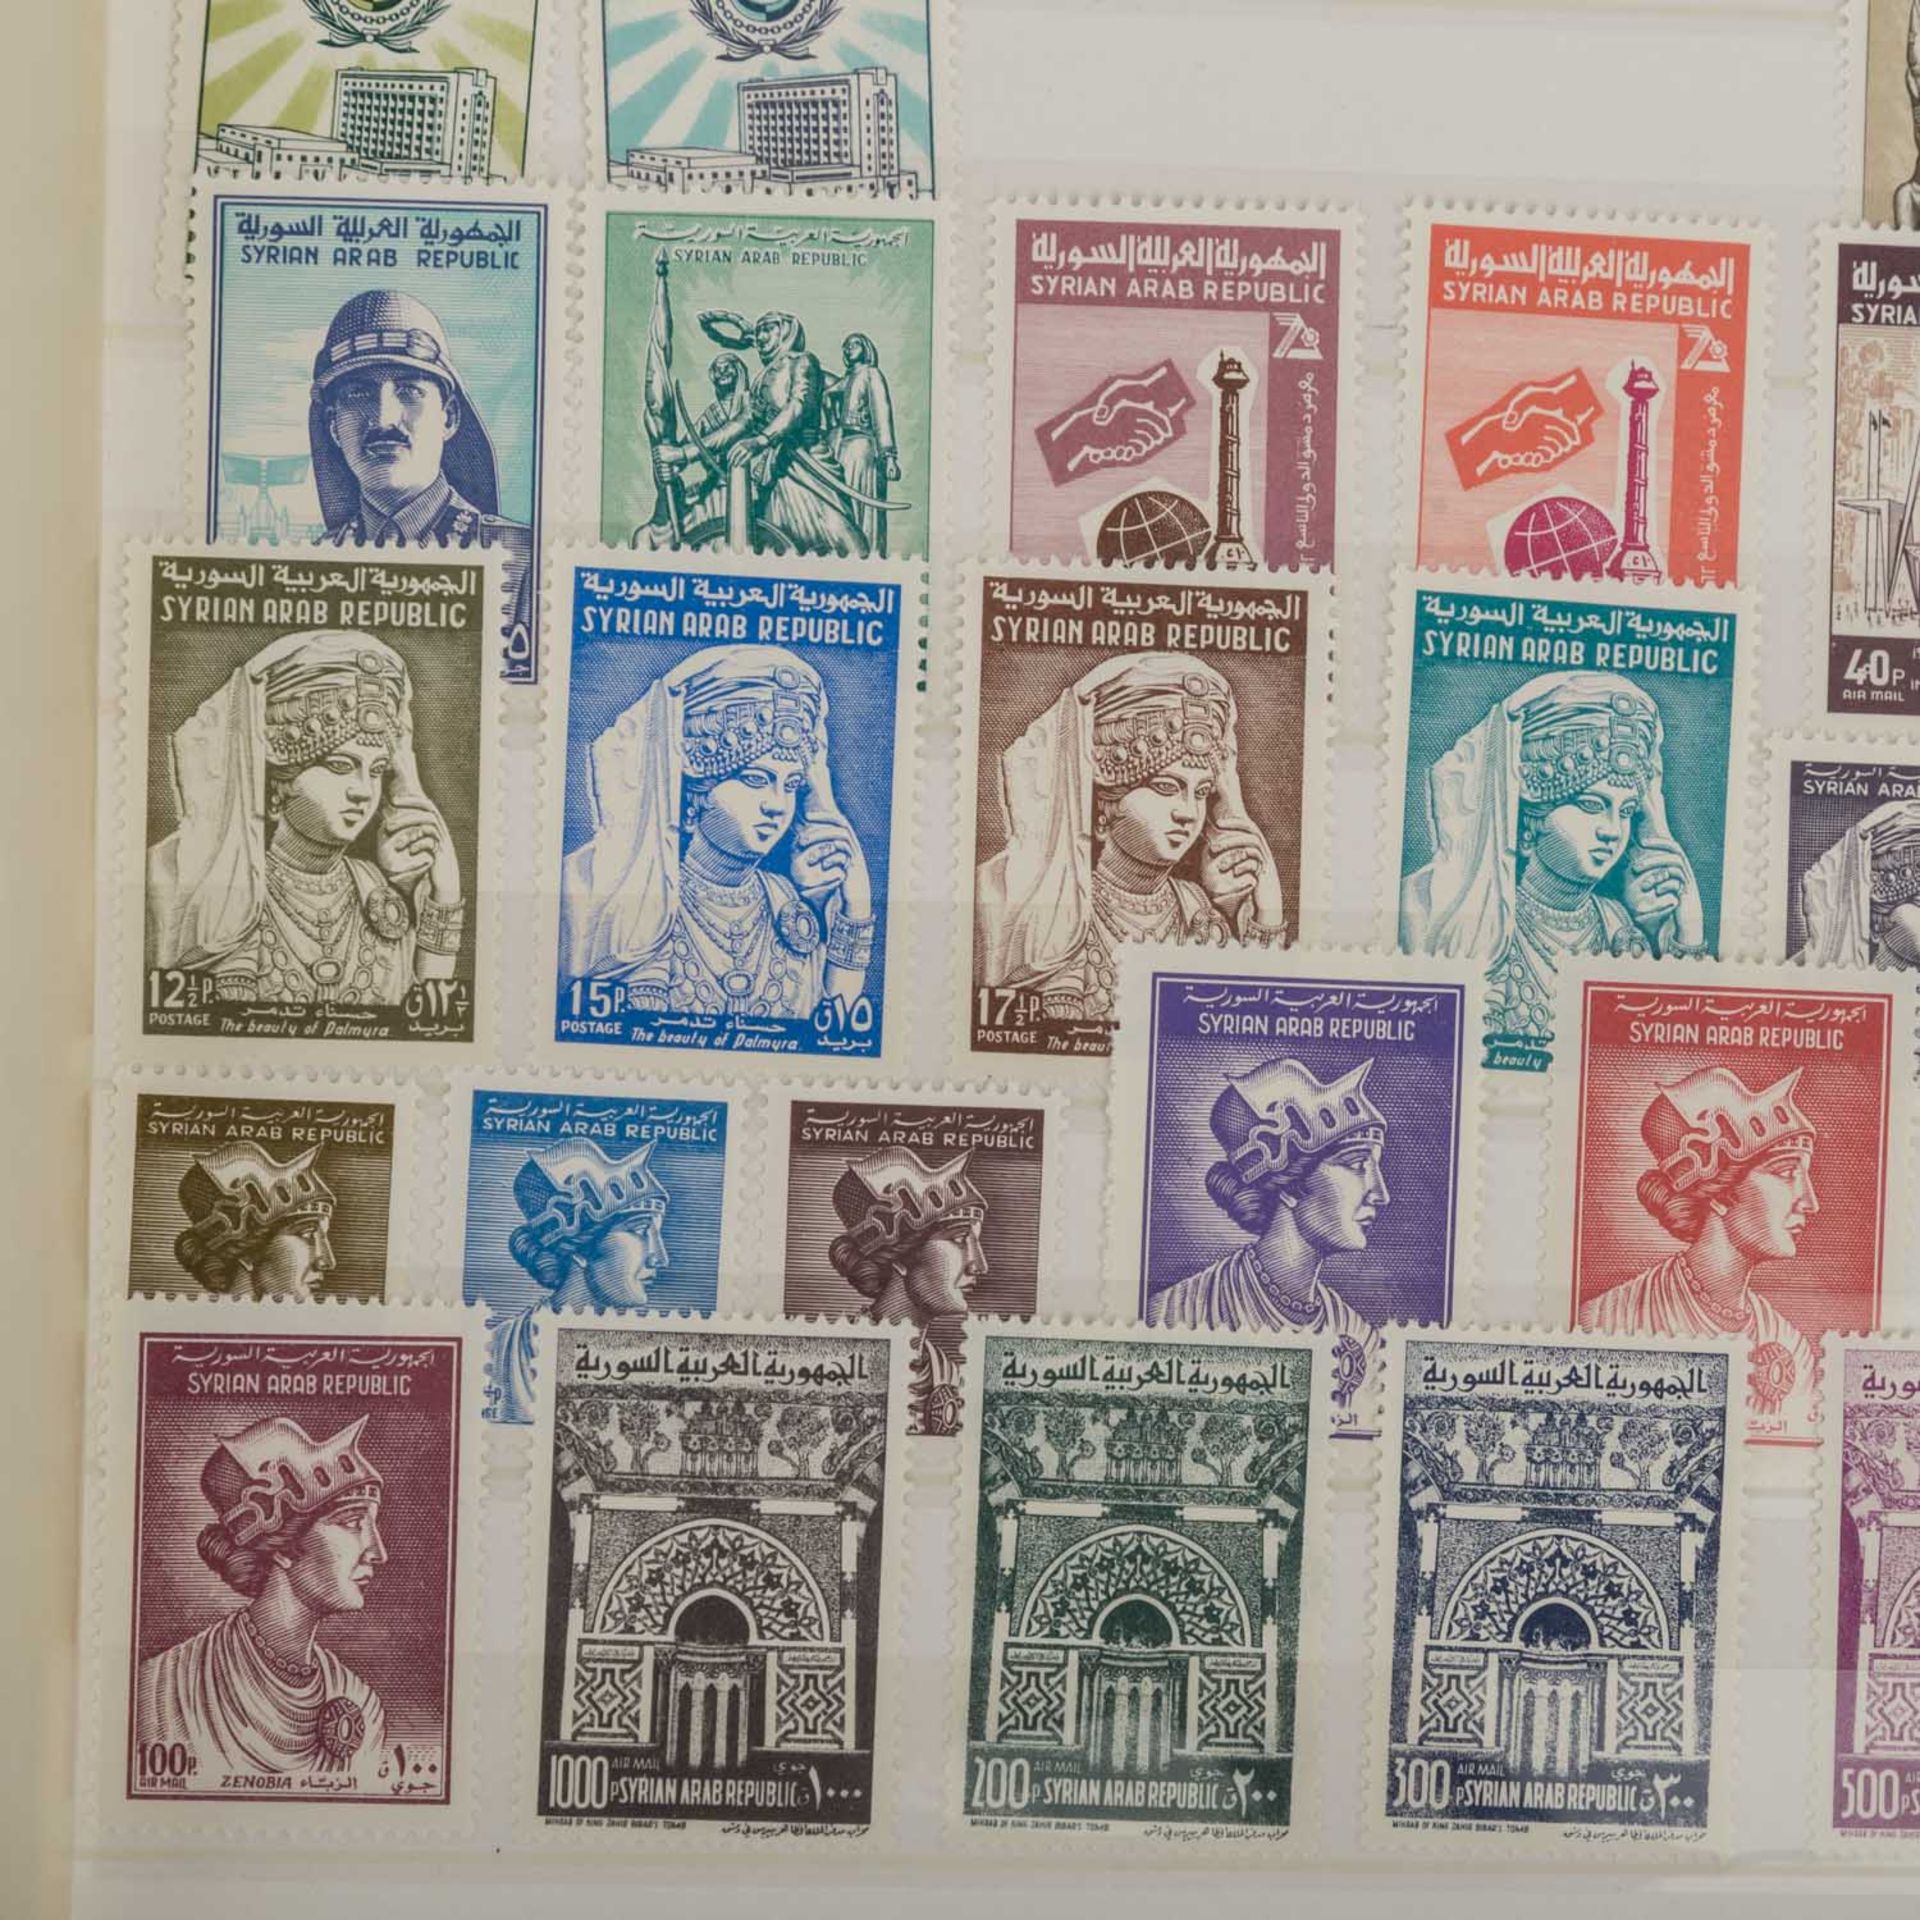 Naher Osten z.B. Jemen - Großes Einsteckbuch mit postfrischen Markenund Blöcken aus Jemen, Syrien, - Bild 5 aus 5